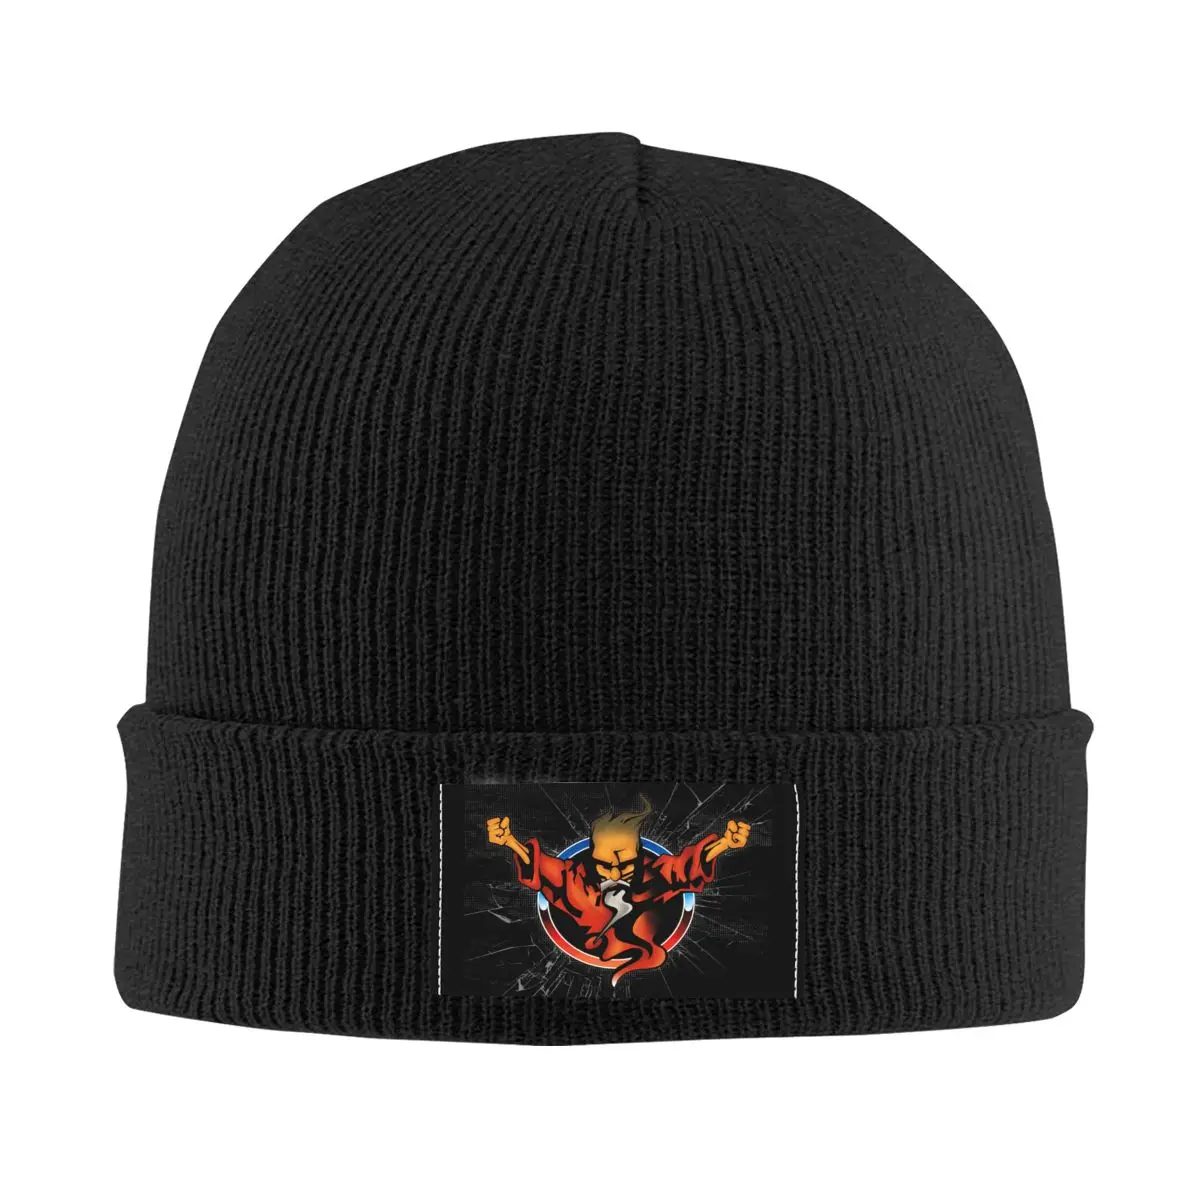 Thunderdome Music Festival Logo Skullies Beanies Caps For Men Women Winter Warm Knit Hat Adult Hardcore Gabber Bonnet Hats 1